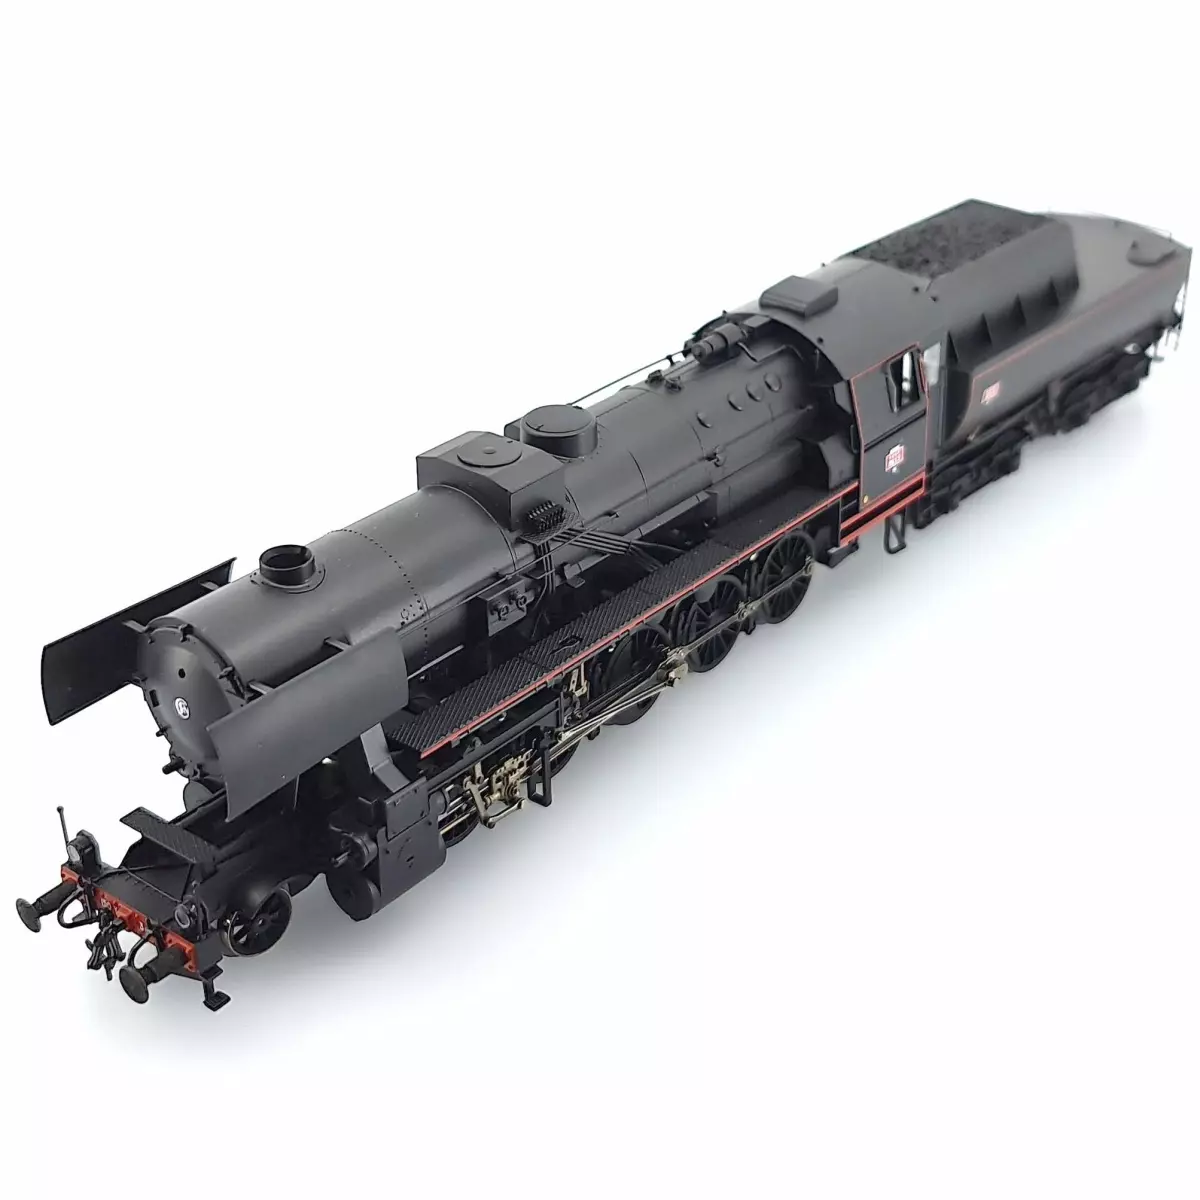 Locomotive Ã  vapeur 150 Y Roco 78280 - HO : 1/87 - SNCF - EP III - analogique